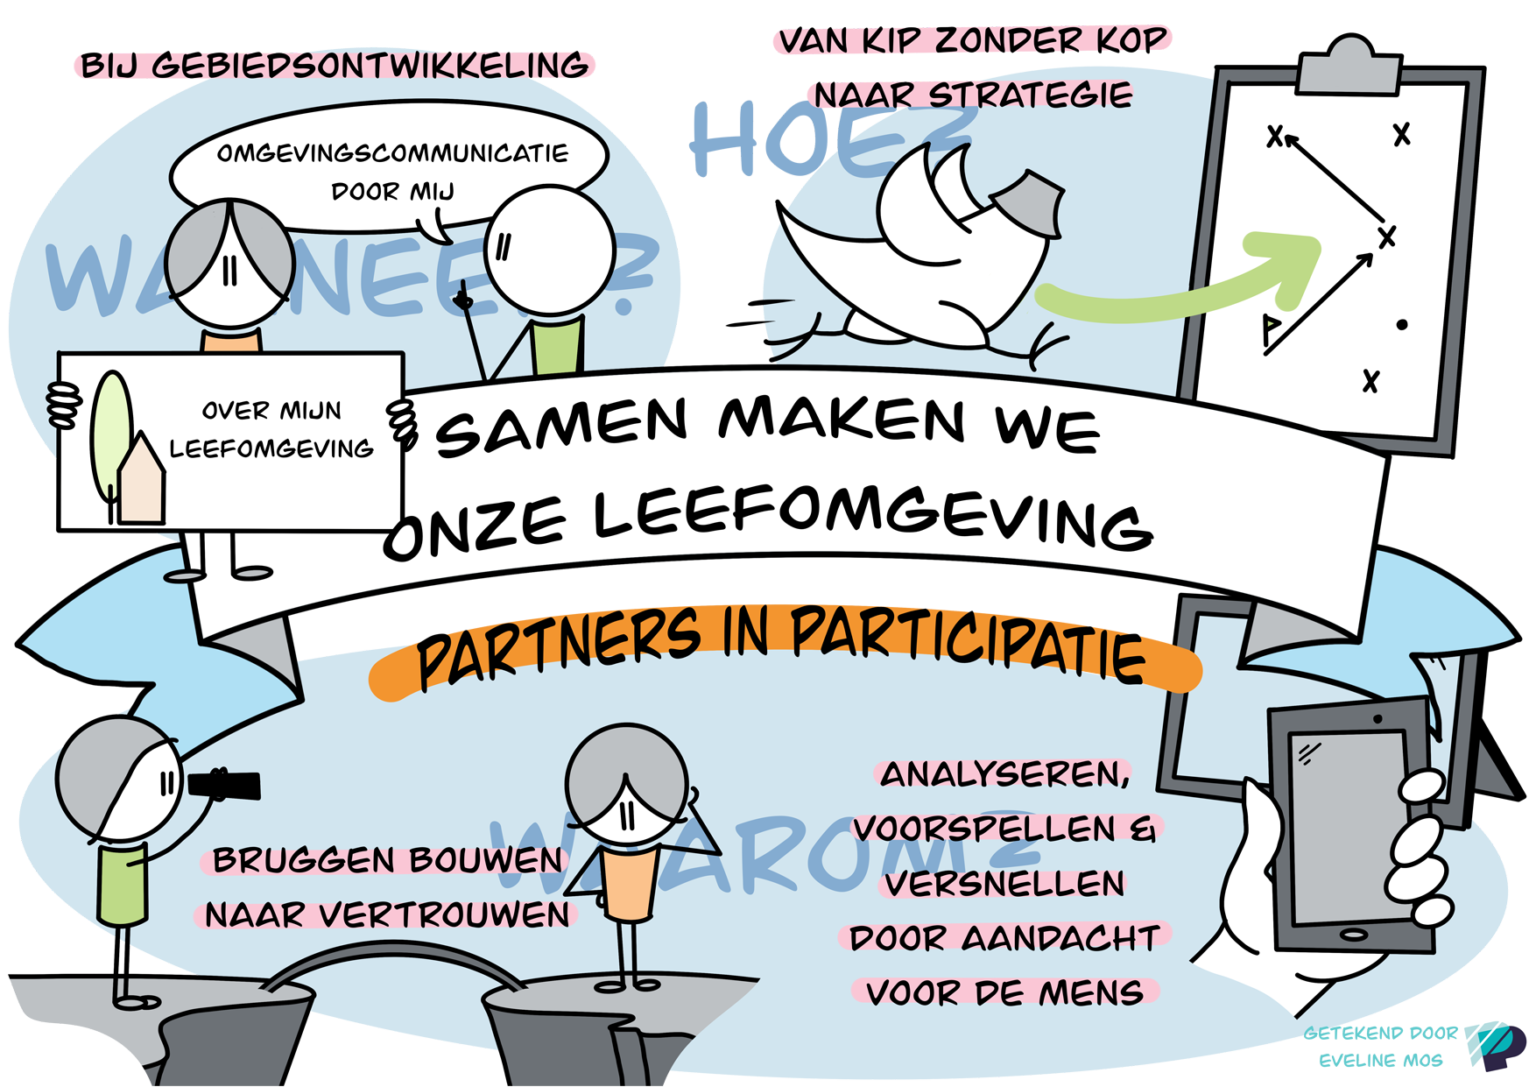 partners in participatie